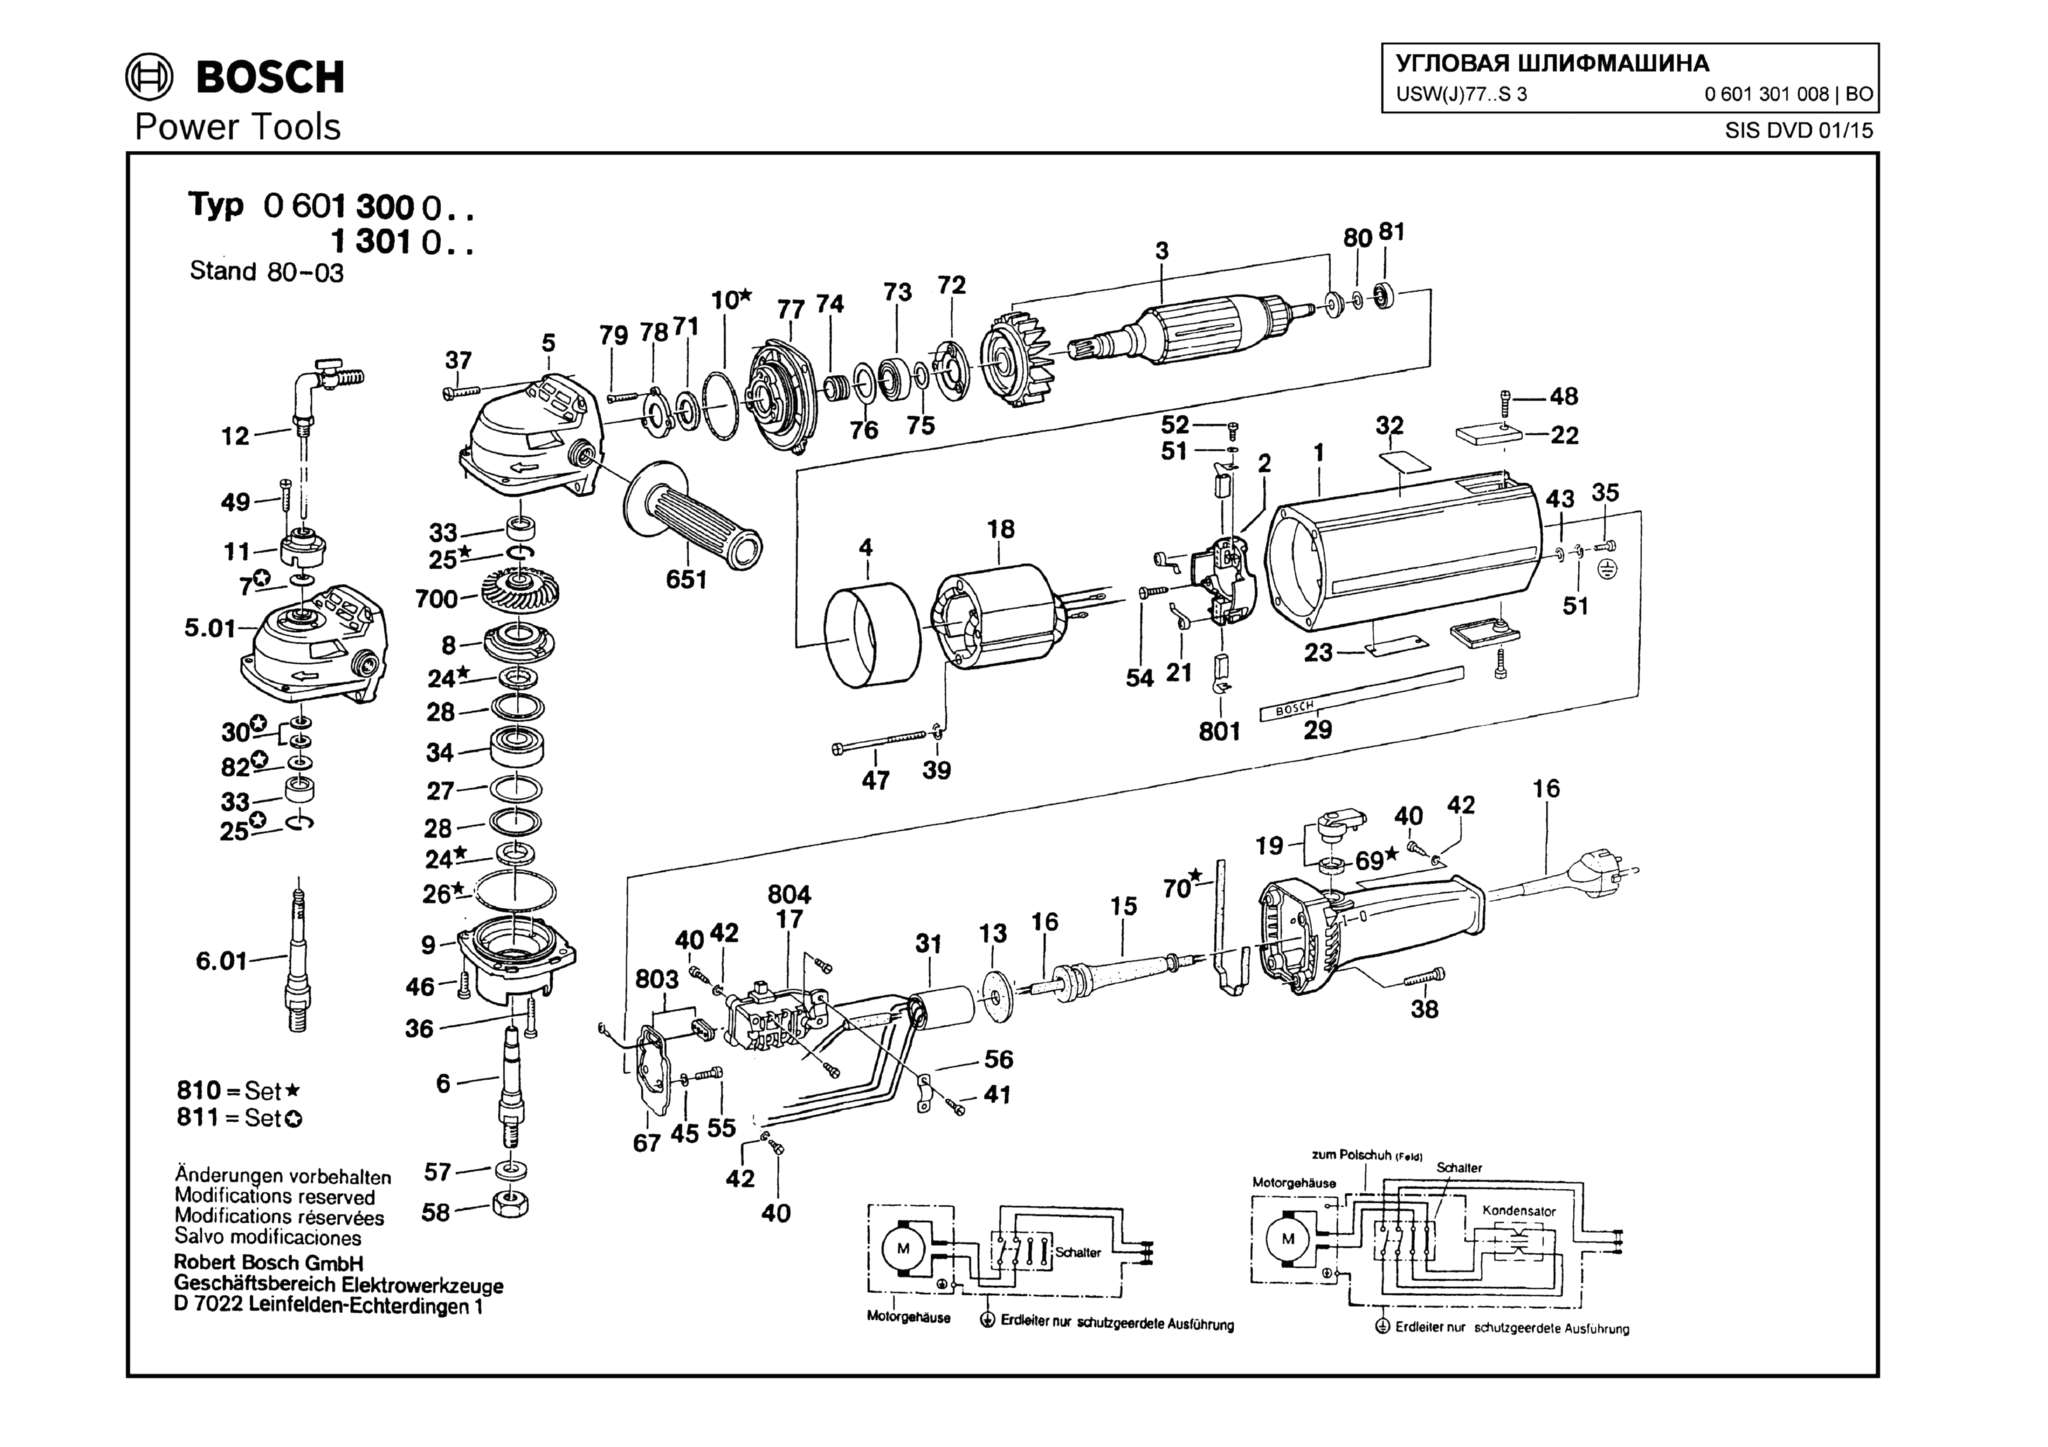 Запчасти, схема и деталировка Bosch USW(J)77..S 3 (ТИП 0601301008)